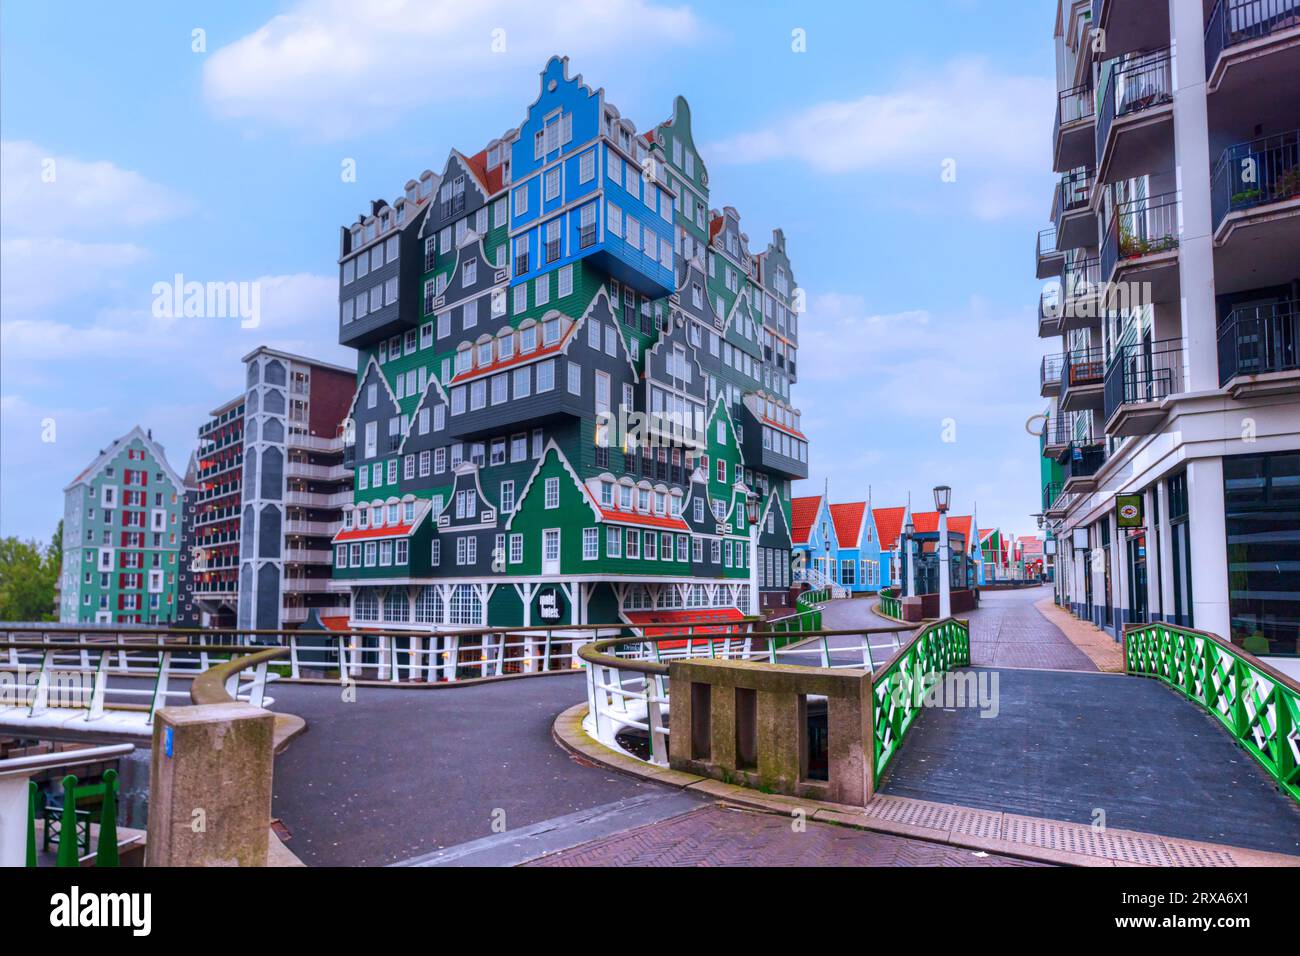 Célèbre développement Inverdan avec hôtel, hôtel de ville et théâtre à Zaandam, Hollande du Nord, pays-Bas Banque D'Images